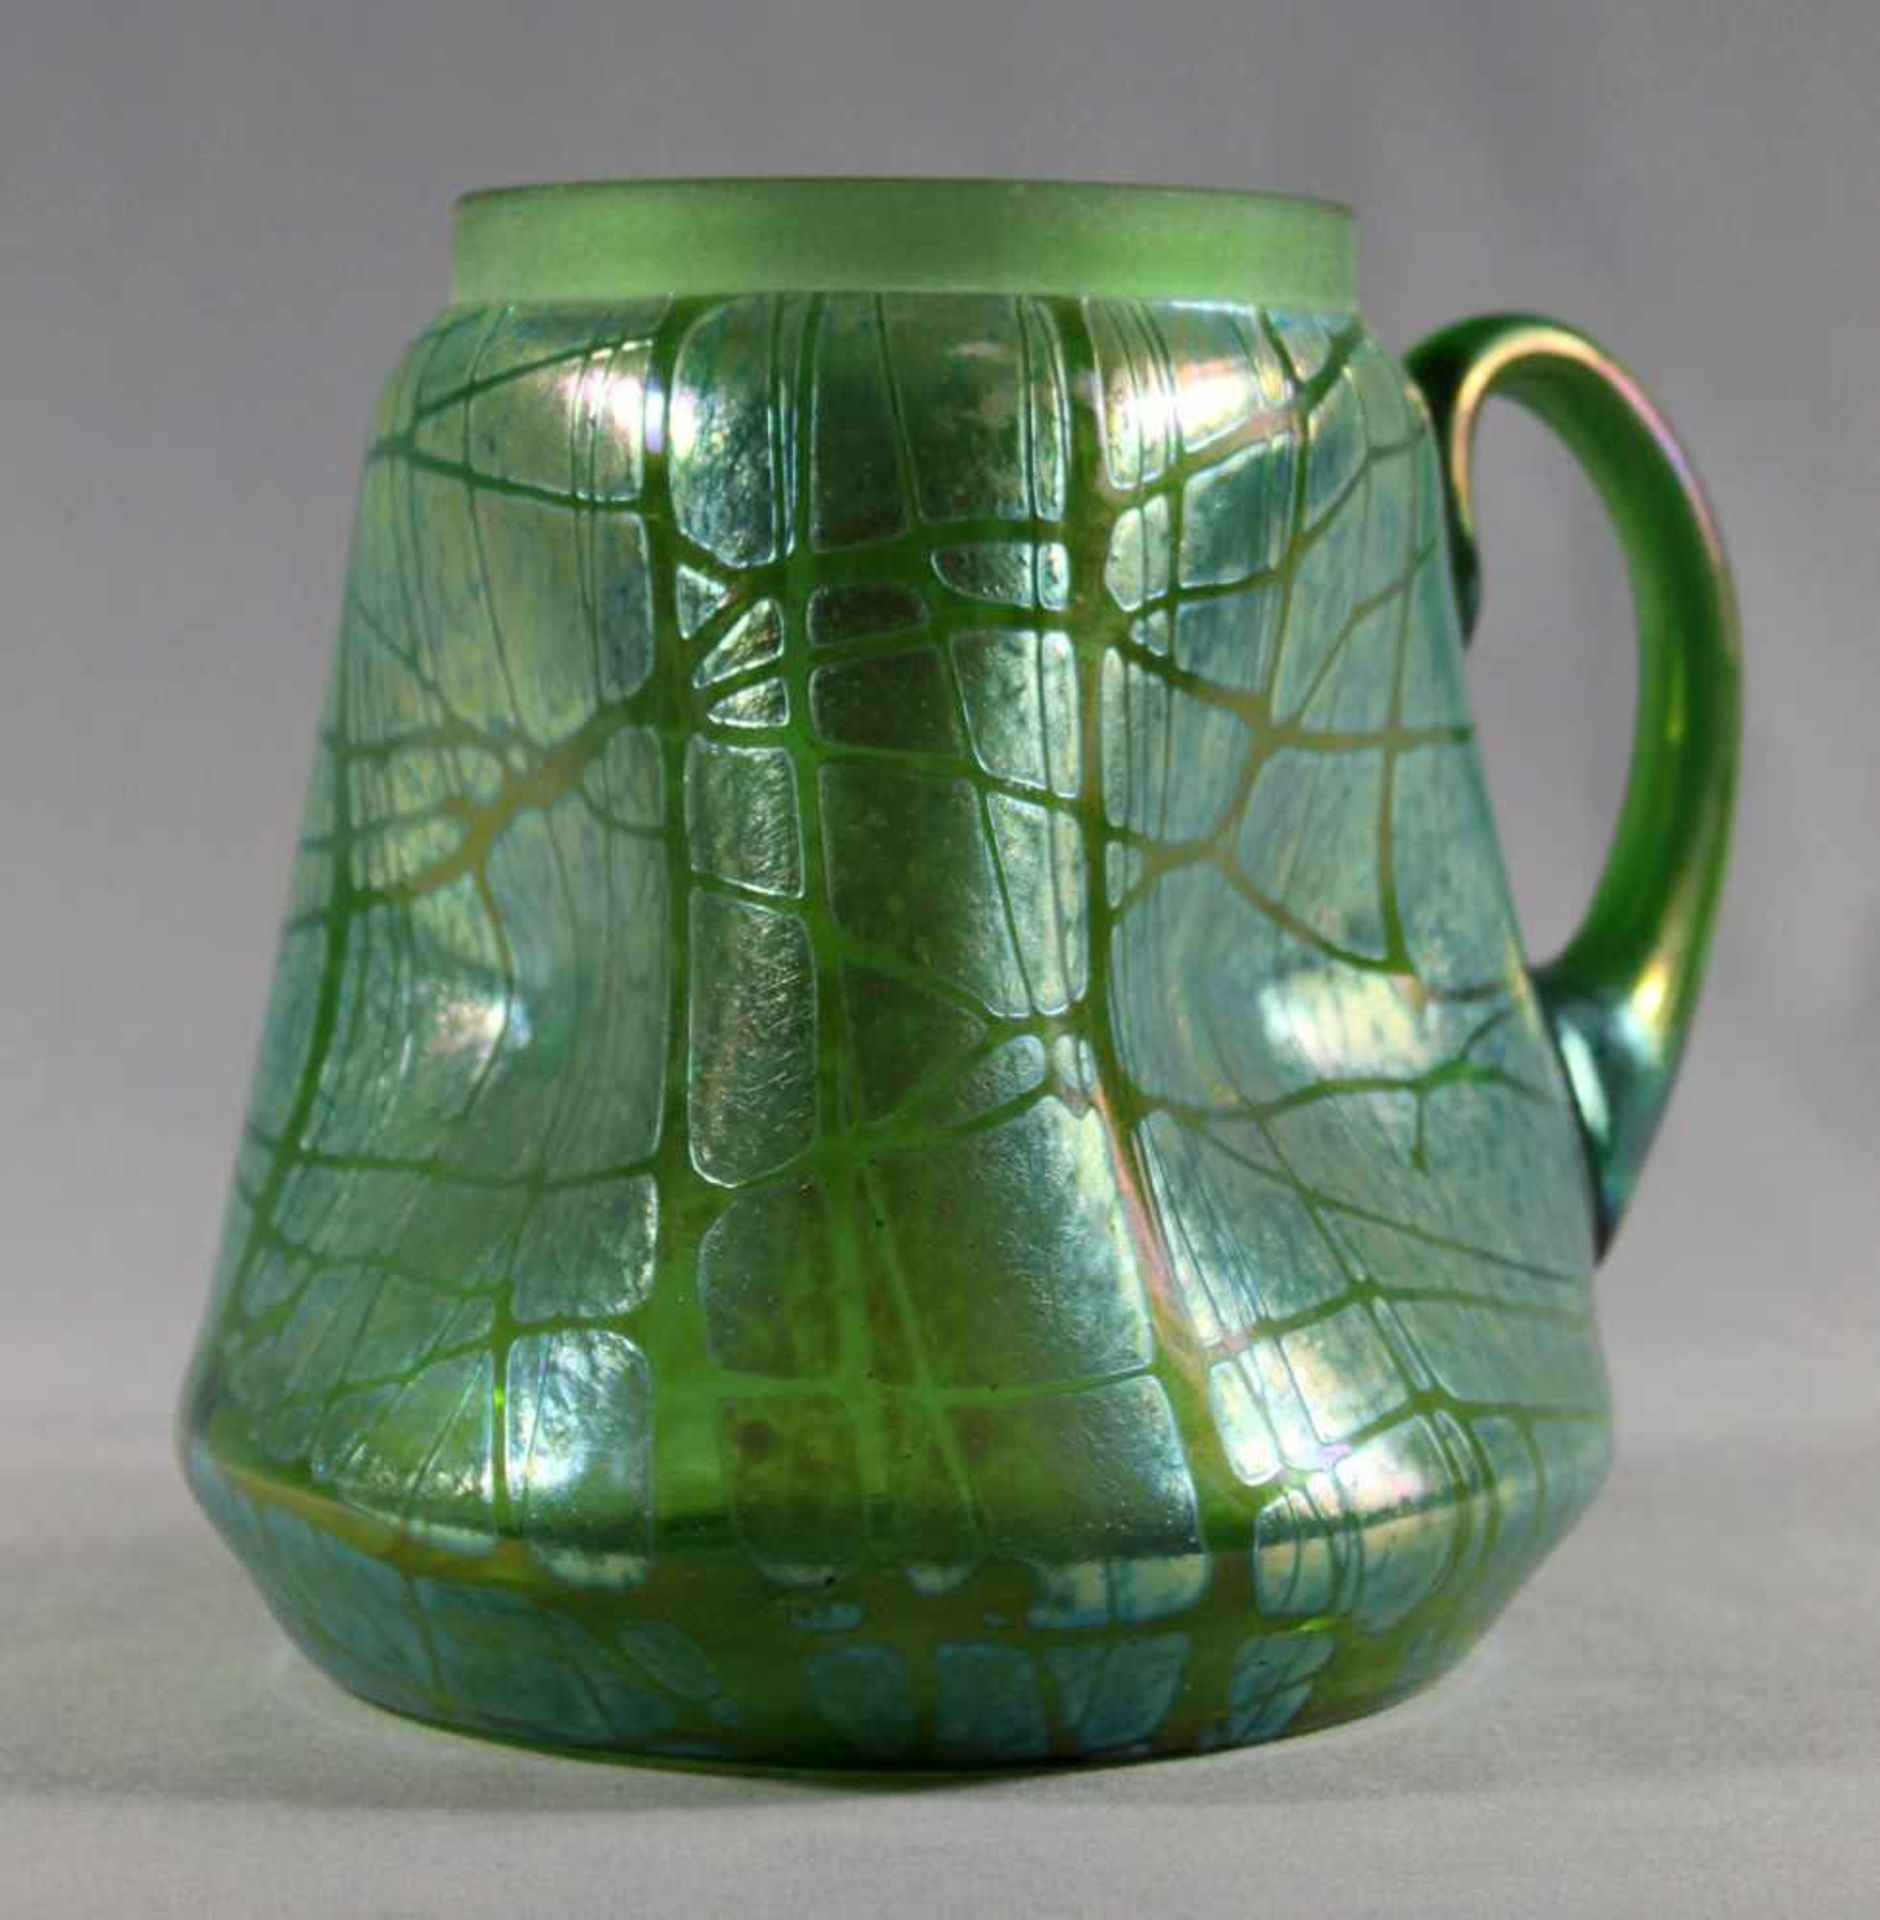 1 großer Henkelkrug grünes Glas, Jugendstil "Lötz", Wandung 3-fach gedellt, mit aufgearbeitetem